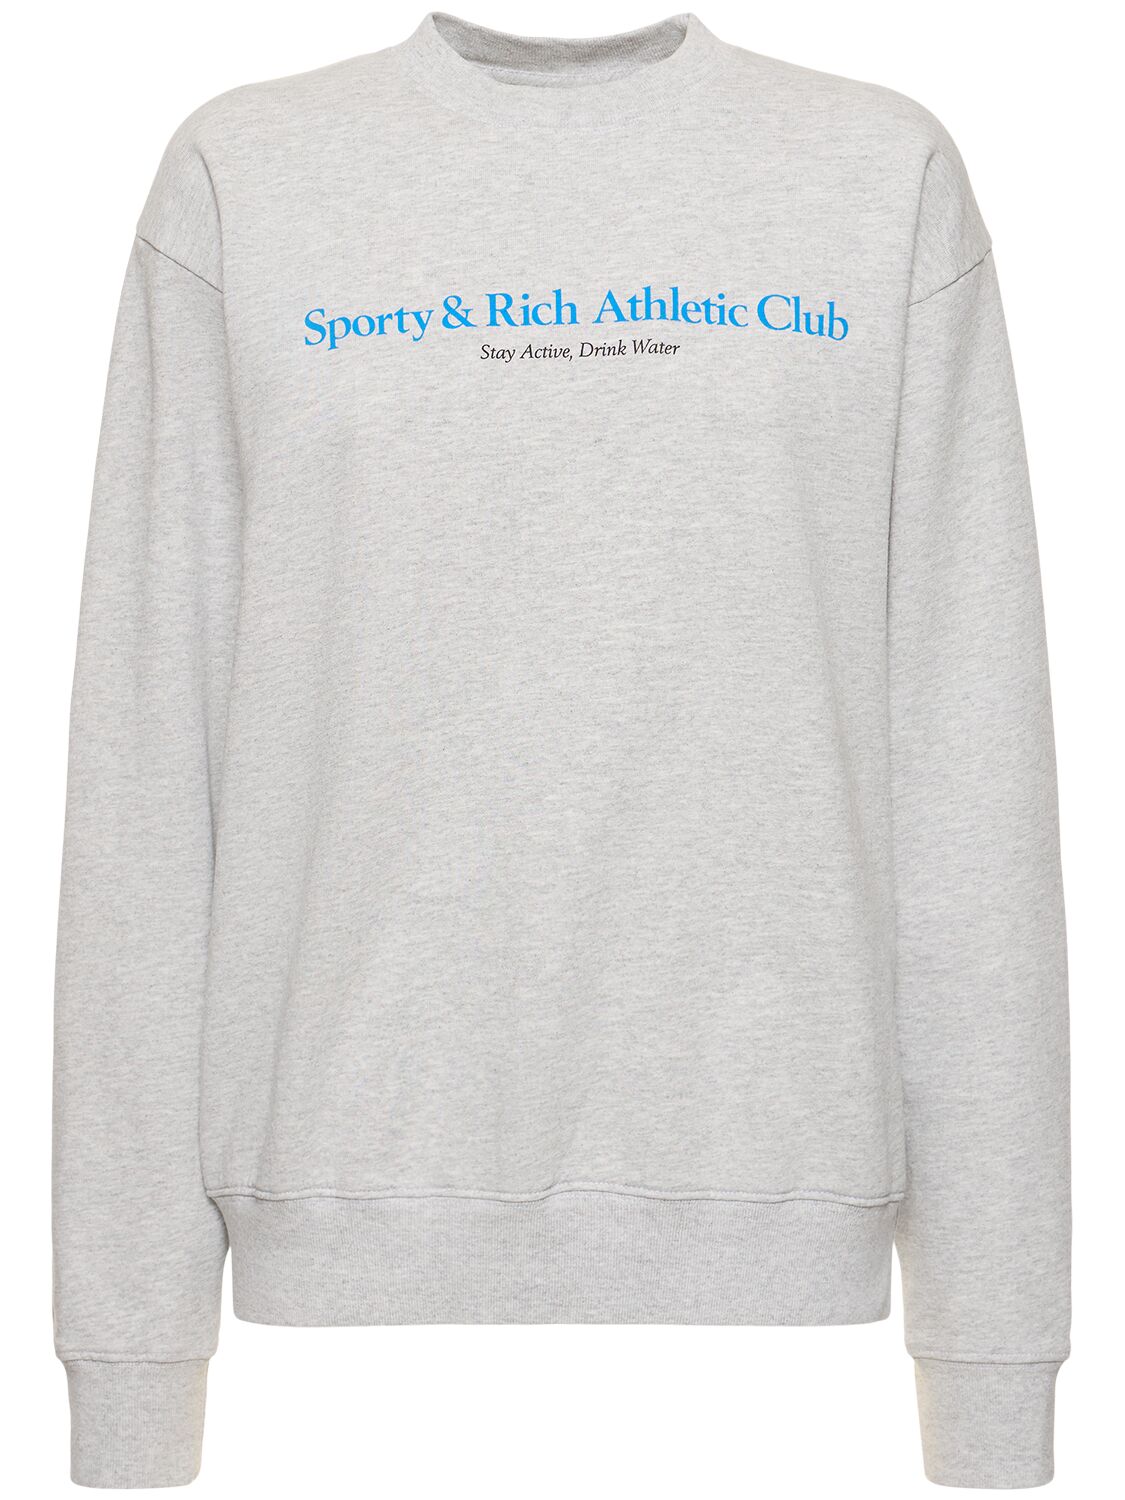 Image of Athletic Club Unisex Cotton Sweatshirt